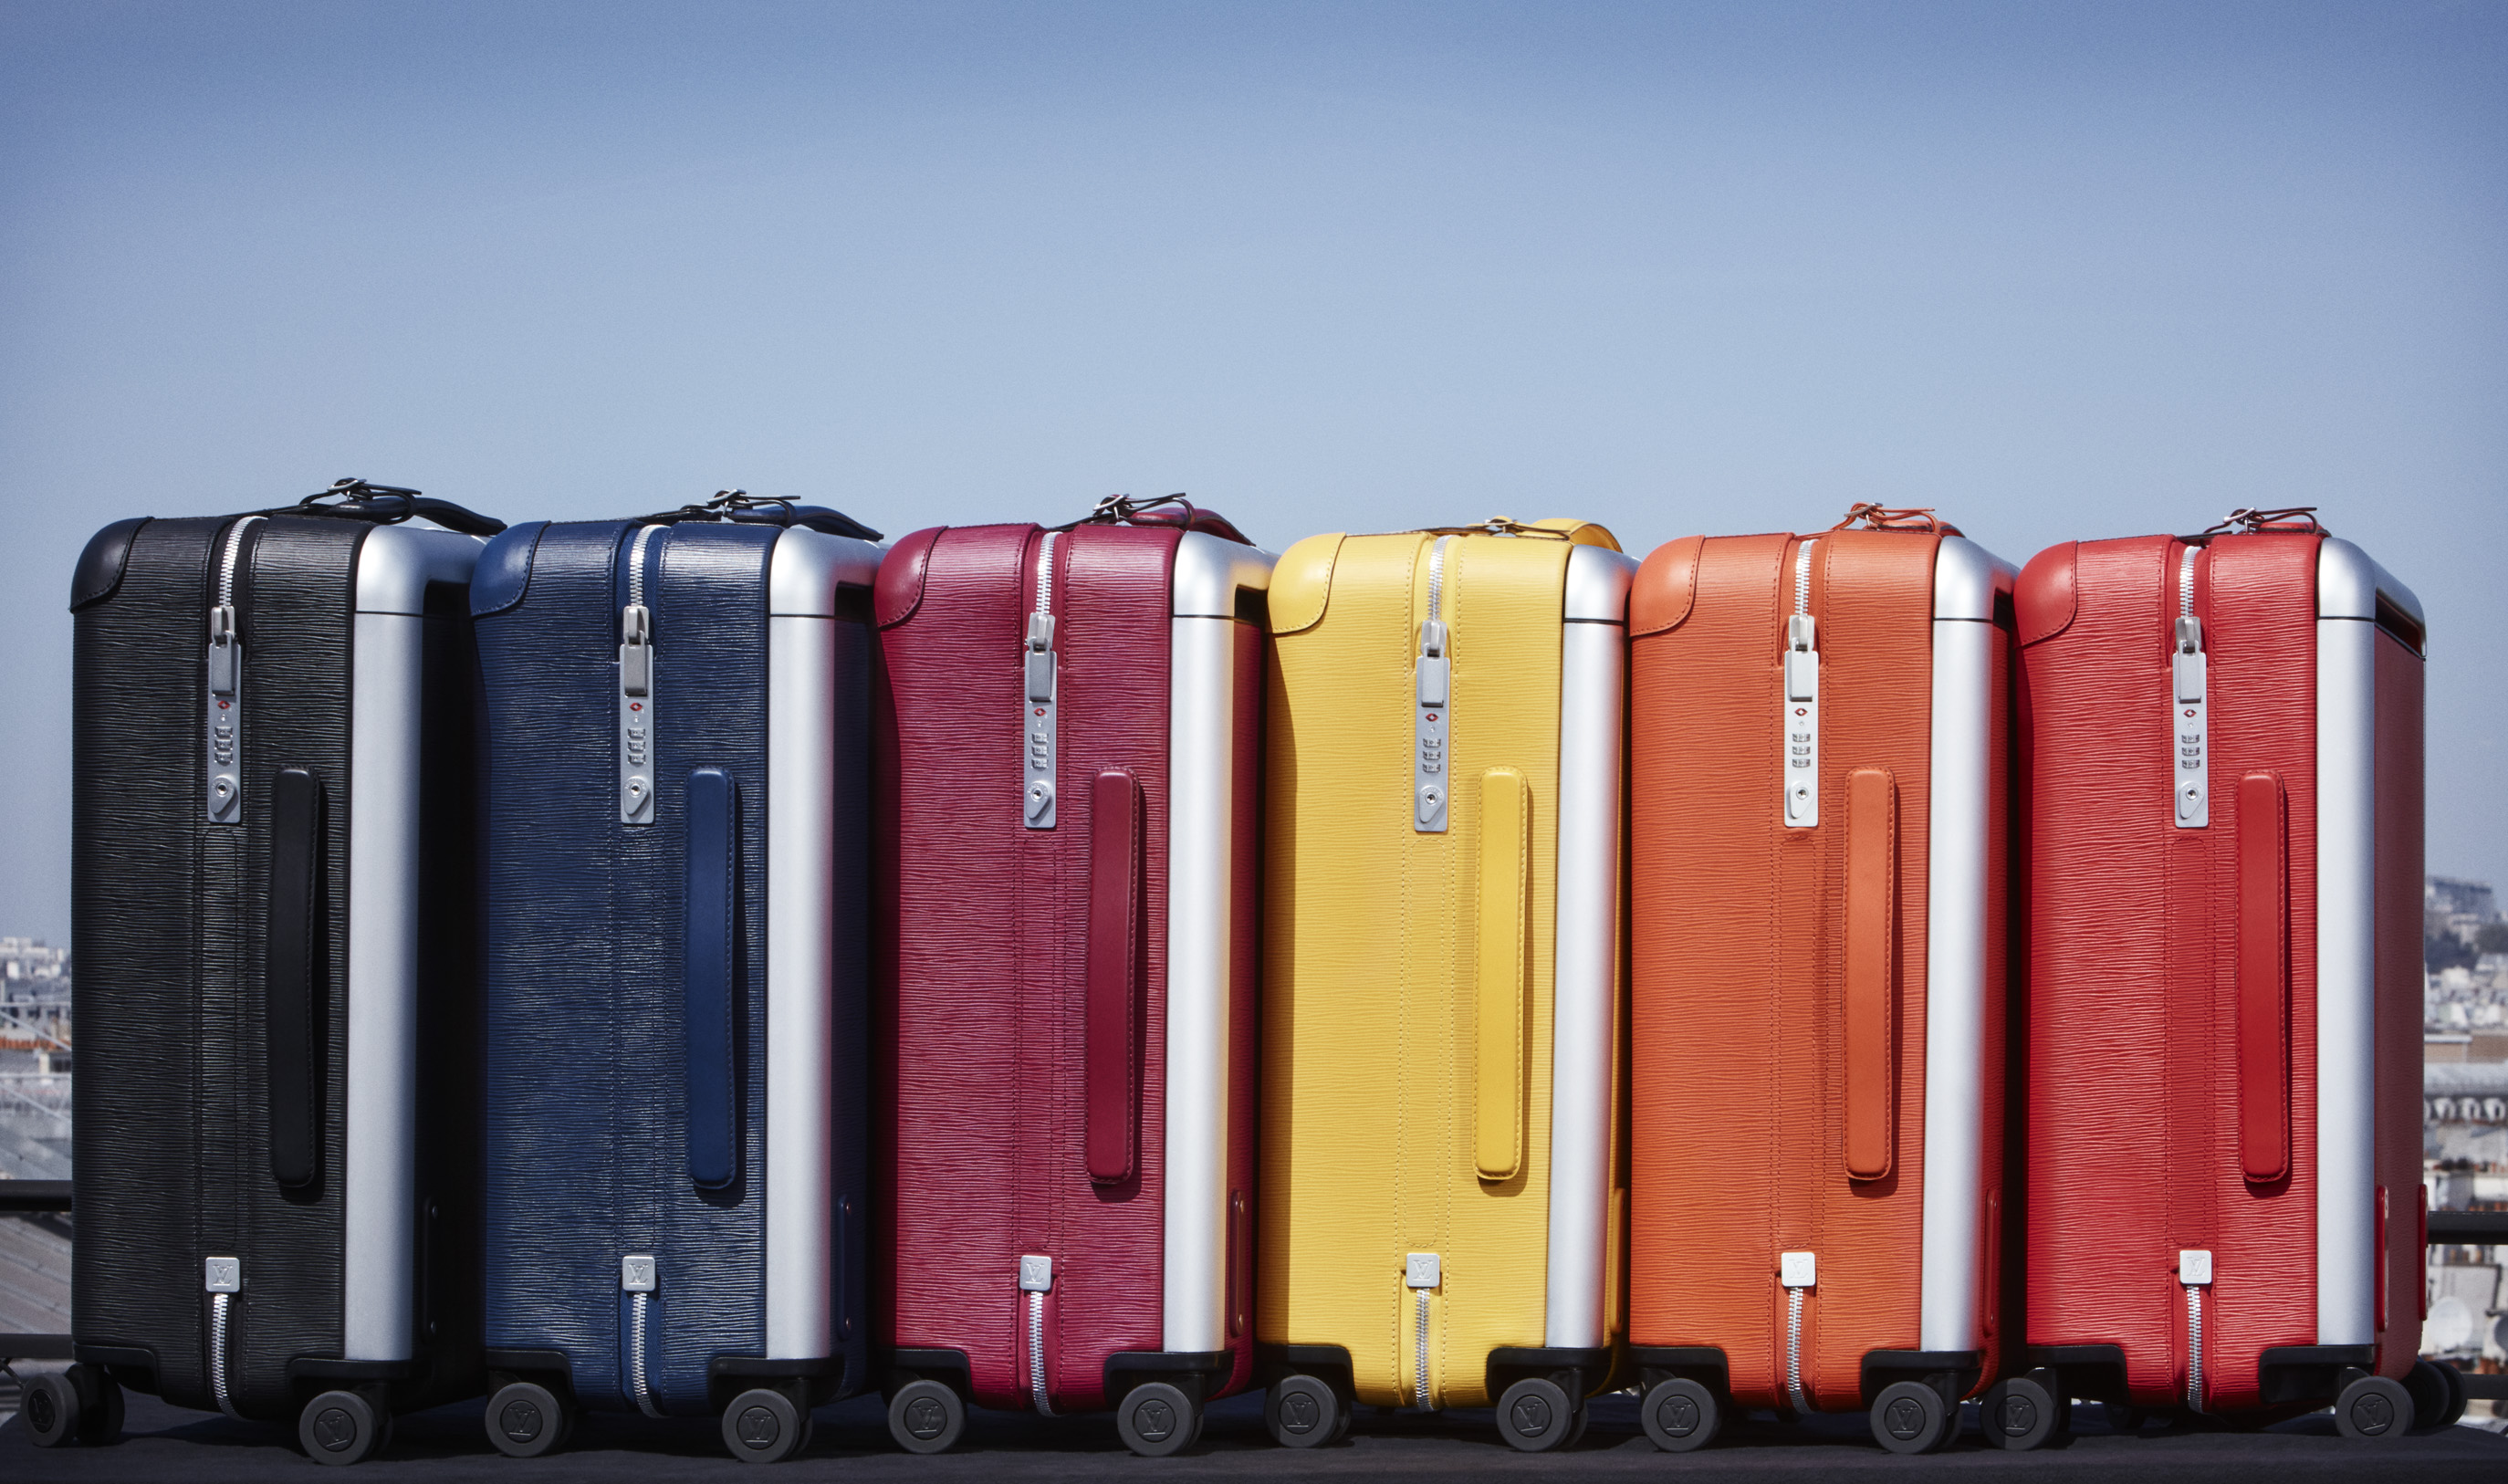 La maleta del verano la han presentado Louis Vuitton y Marc Newson